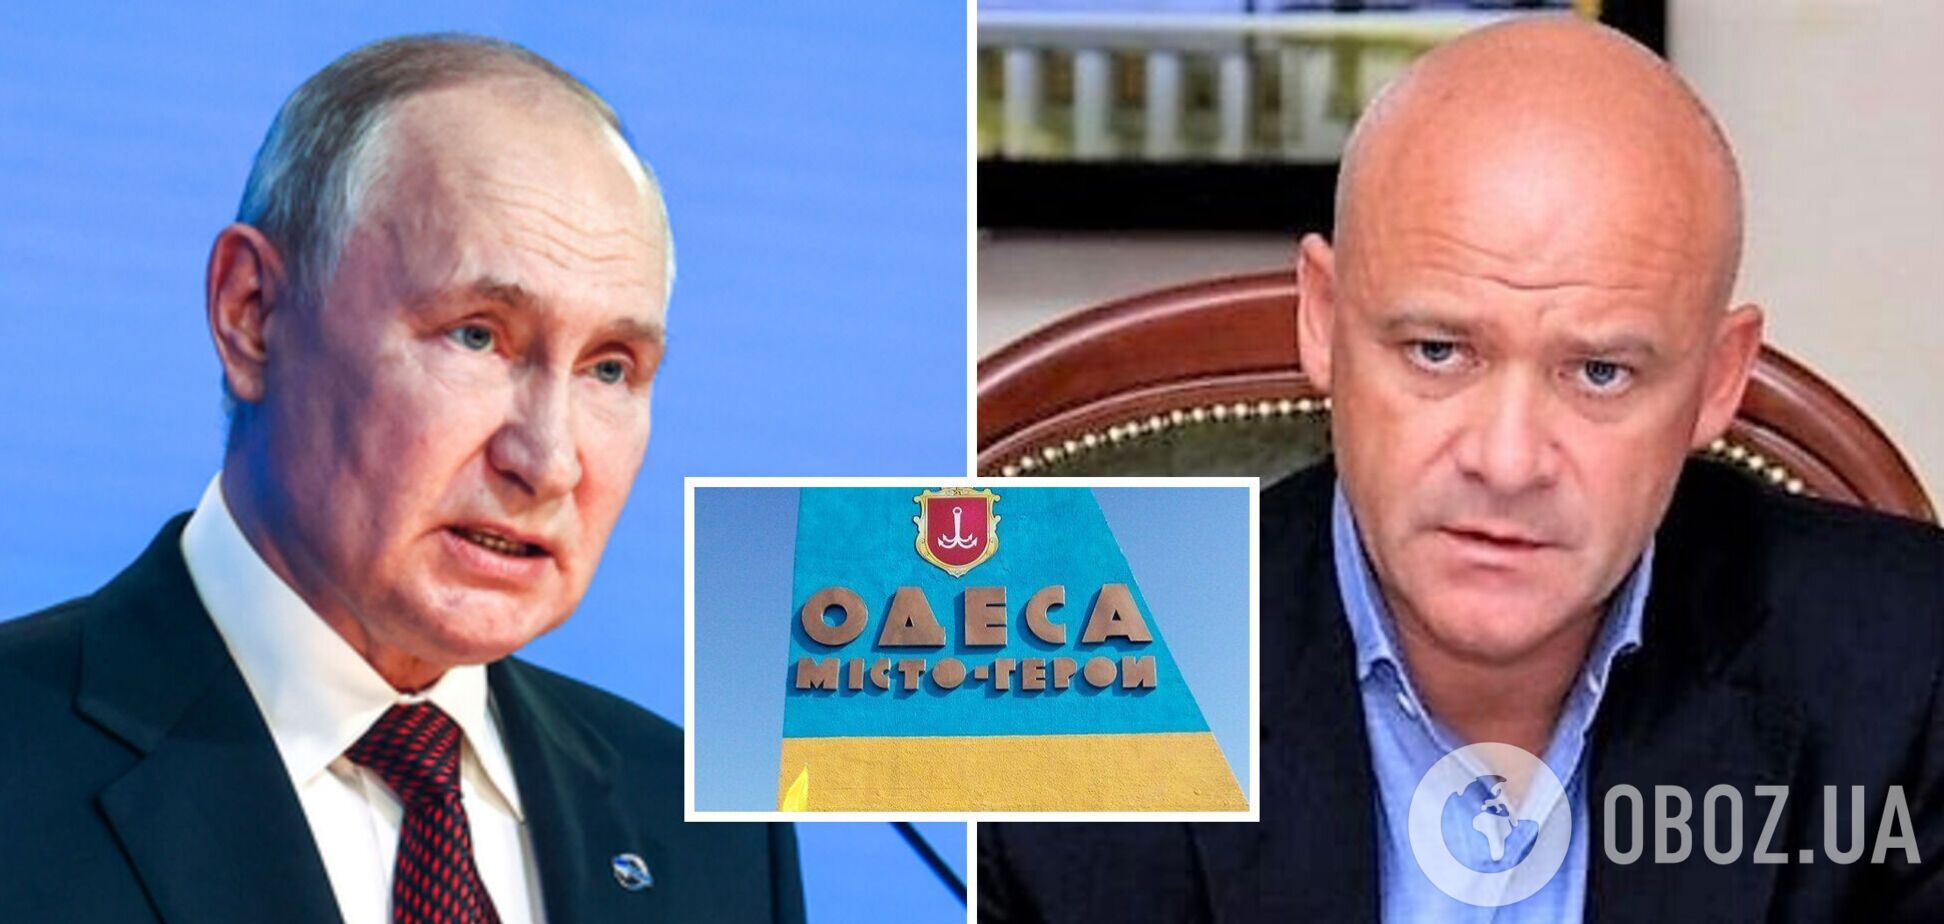 'Вам уже вынесен приговор': Путин назвал Одессу 'русским городом' и получил резкий ответ